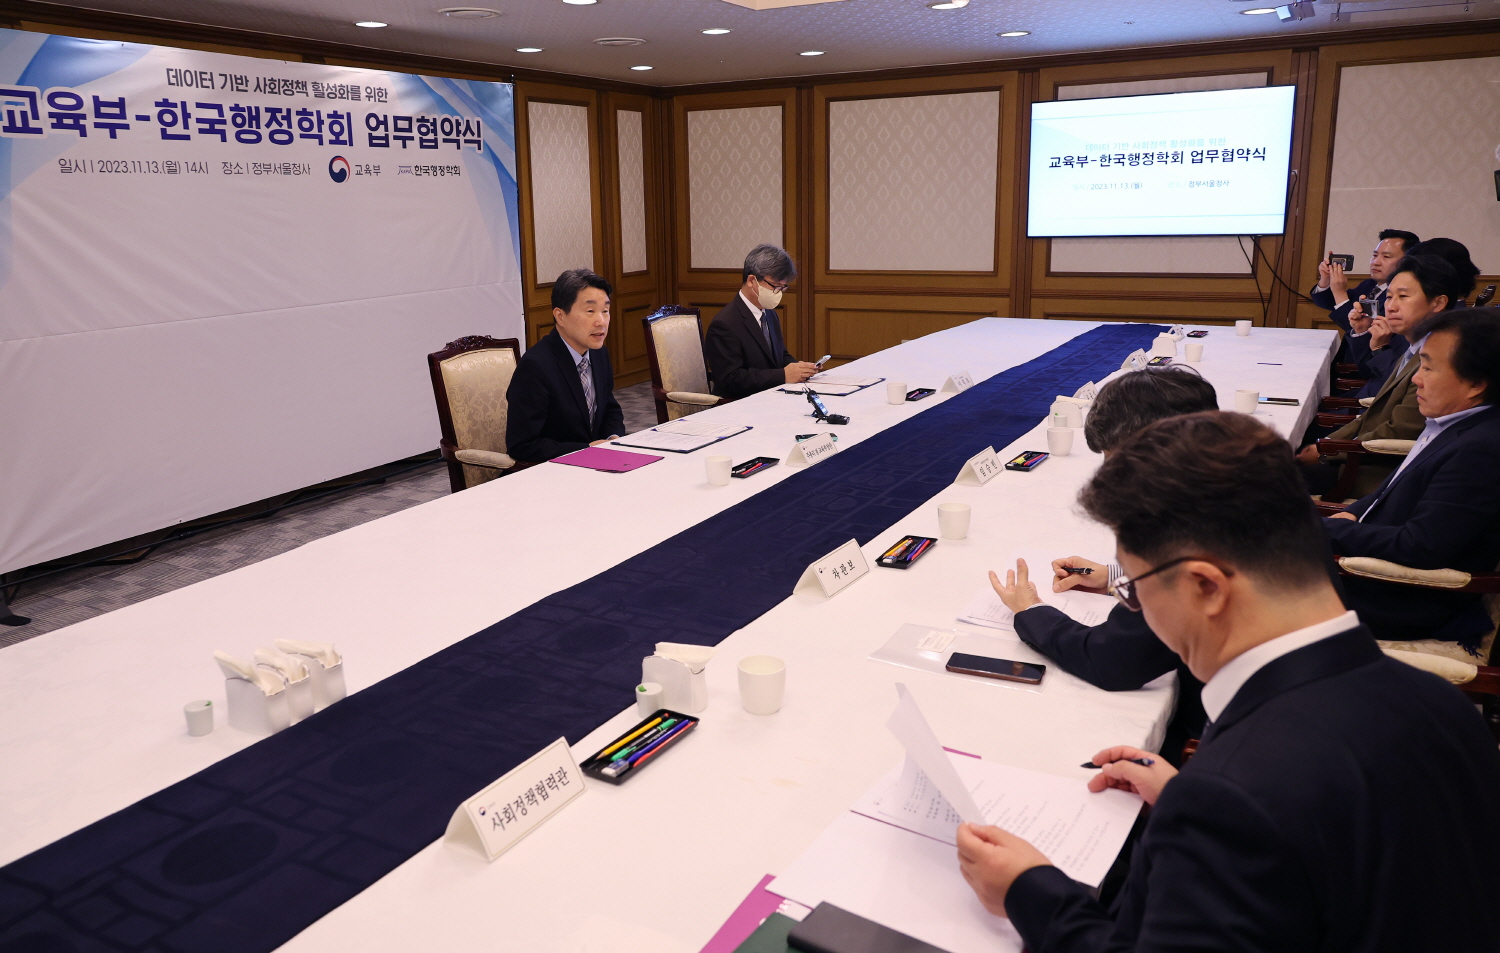 이주호 부총리 겸 교육부장관은 11월 13일(월), 정부서울청사에서 열리는 교육부-한국행정학회 업무협약식에 참석했다.